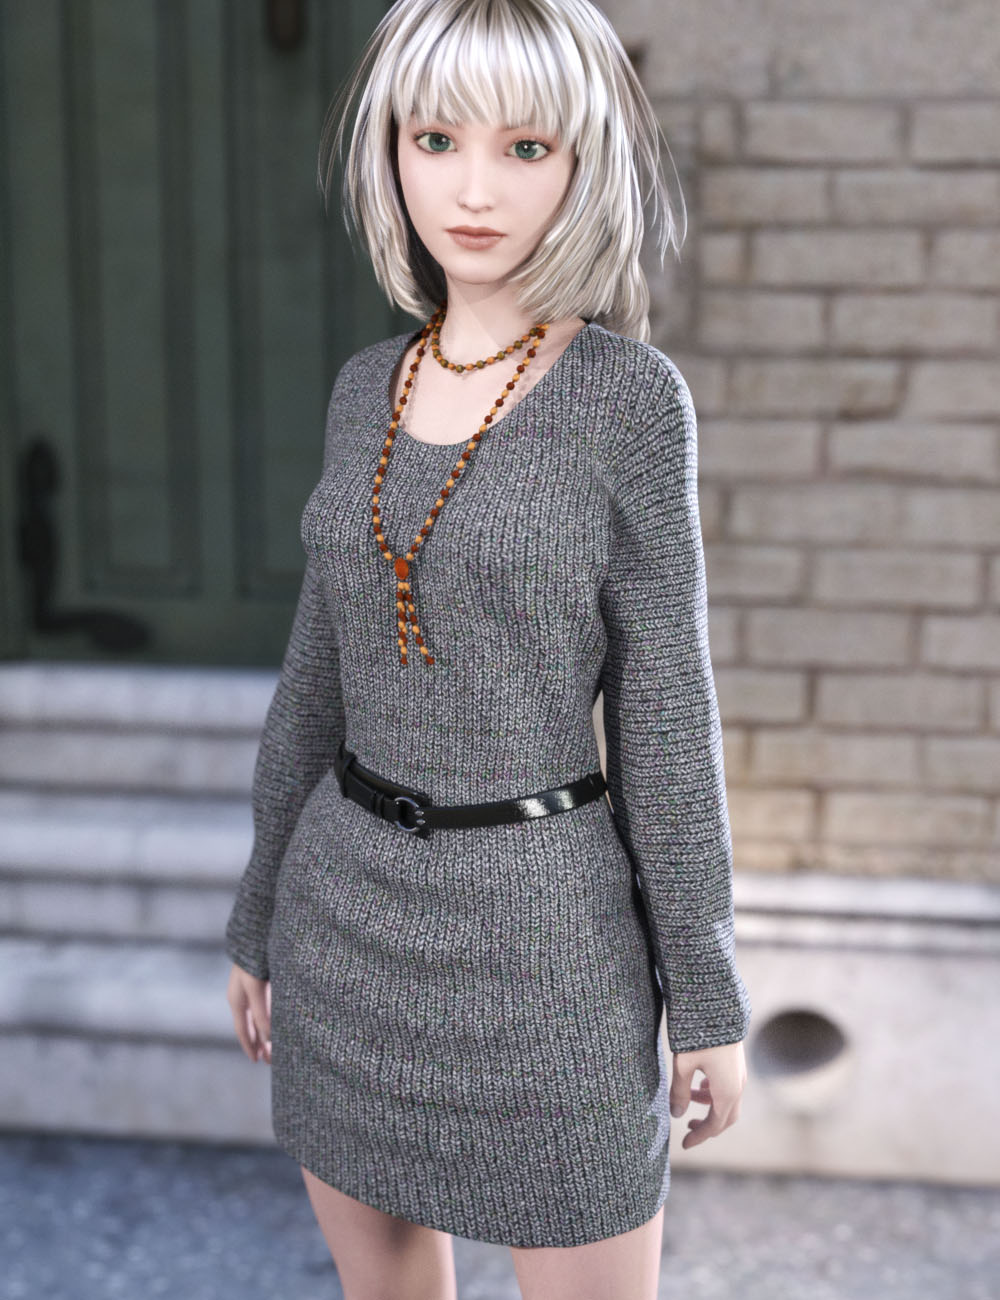 Knit Dress for Genesis 3 Female(s) by: tentman, 3D Models by Daz 3D